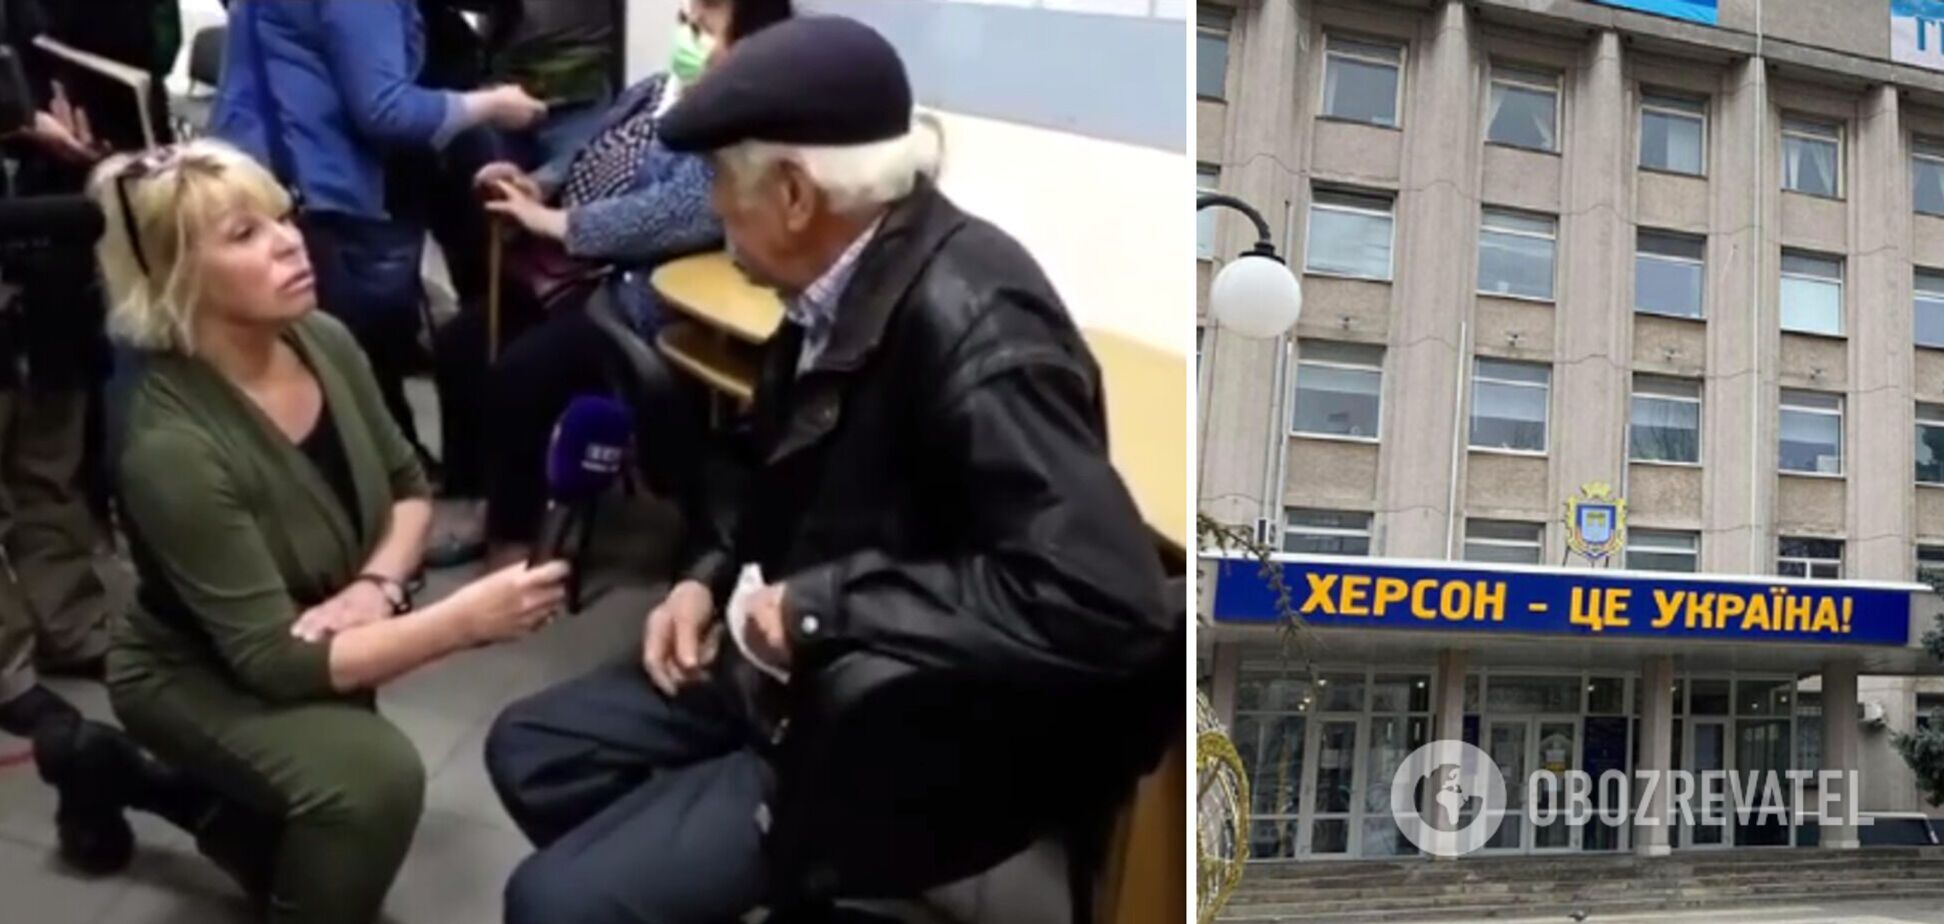 'Хочу жити в Україні!' Пенсіонер із Херсона зіпсував 'картинку' пропагандистів правдою. Відео